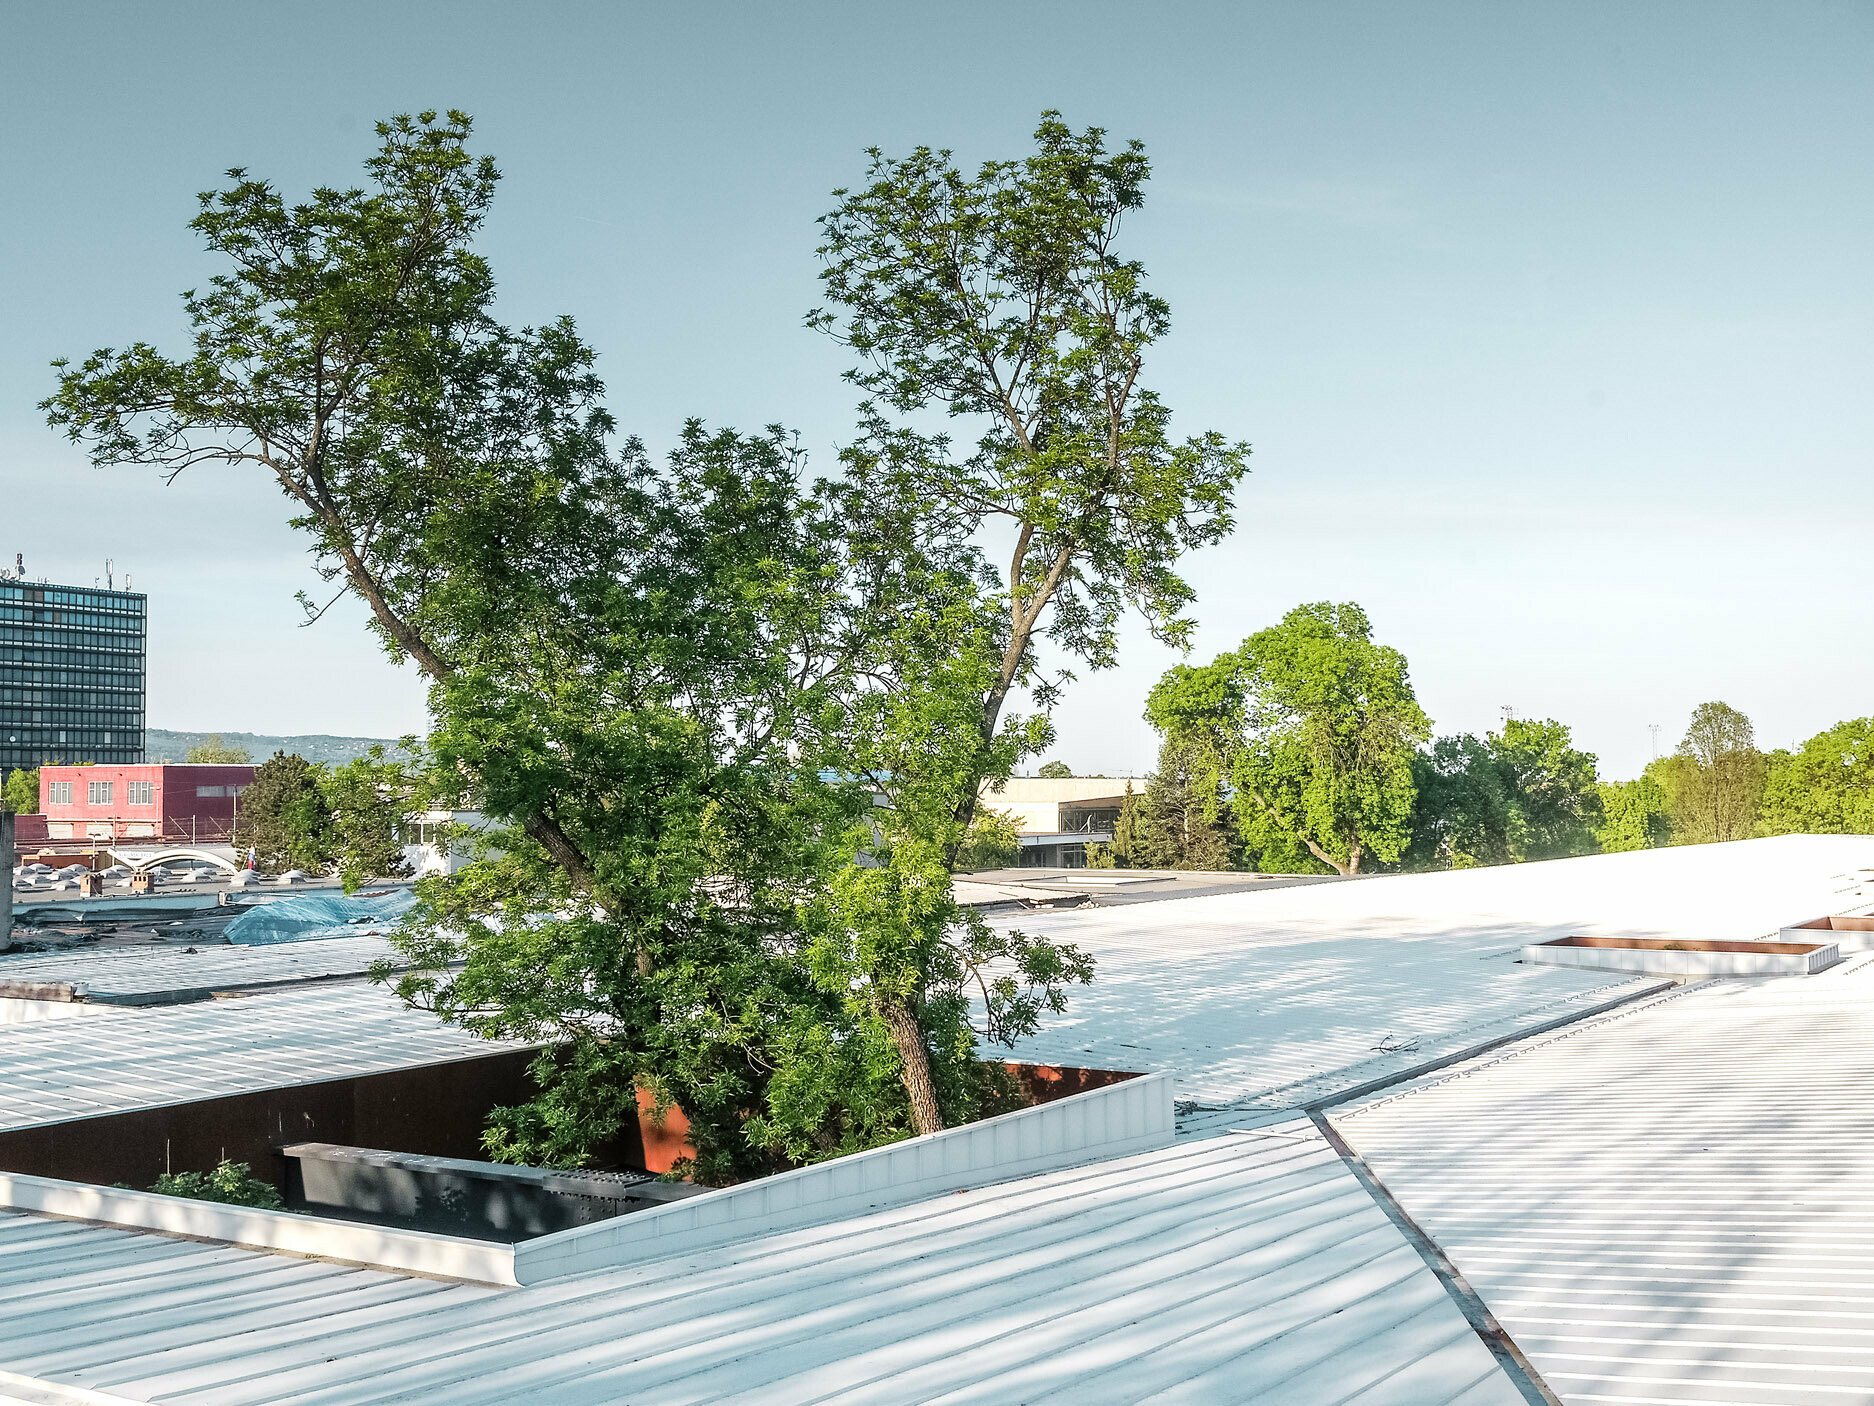 Das Bild zeigt eine Bushaltestelle in Kroatien mit einem weißen Prefalz Dach von PREFA. Große Bäume durchbrechen das Dach an mehreren Stellen, was der Konstruktion ein besonderes architektonisches Merkmal verleiht. Im Hintergrund sind weitere Gebäude und ein hoher Büroturm zu sehen. Das Bild verdeutlicht die Kombination aus funktionaler Architektur und natürlicher Umgebung, wobei das weiße Dach und das Grün der Bäume einen auffälligen Kontrast bilden.